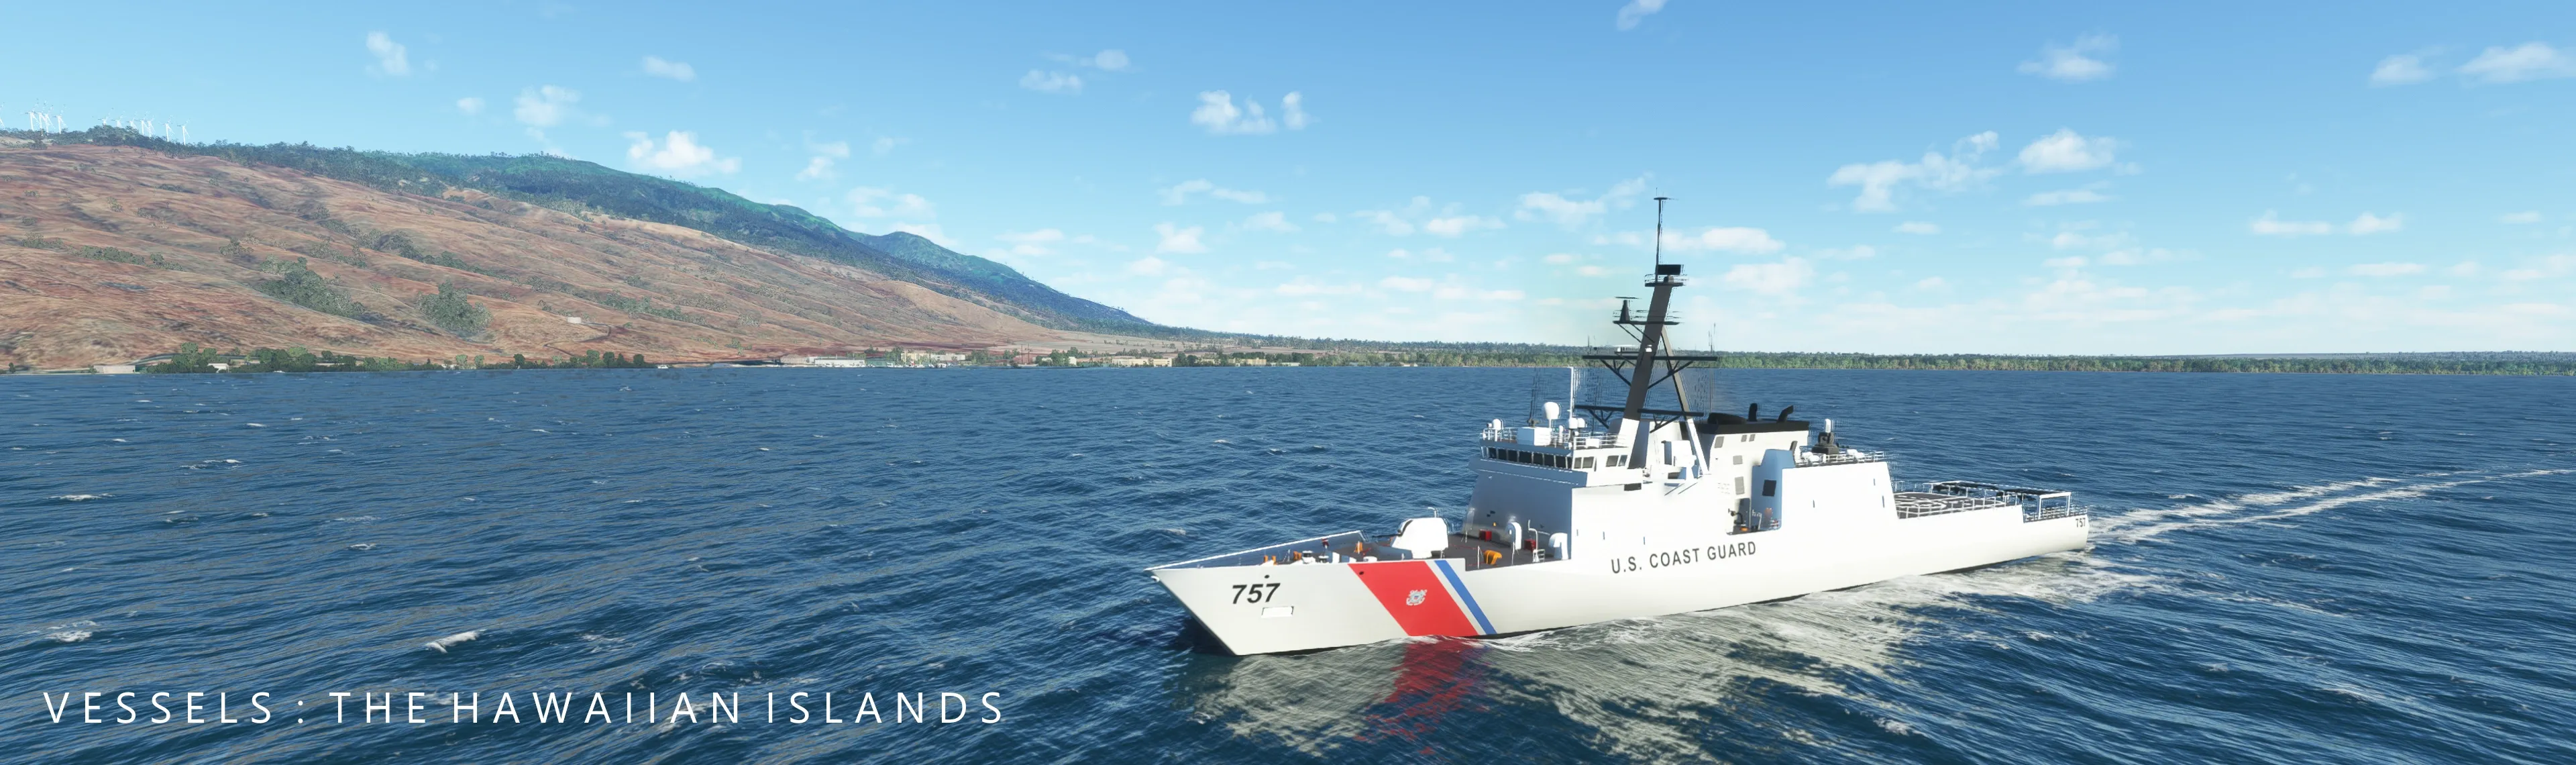 Vessels Hawaiian Islands US Coast Guard